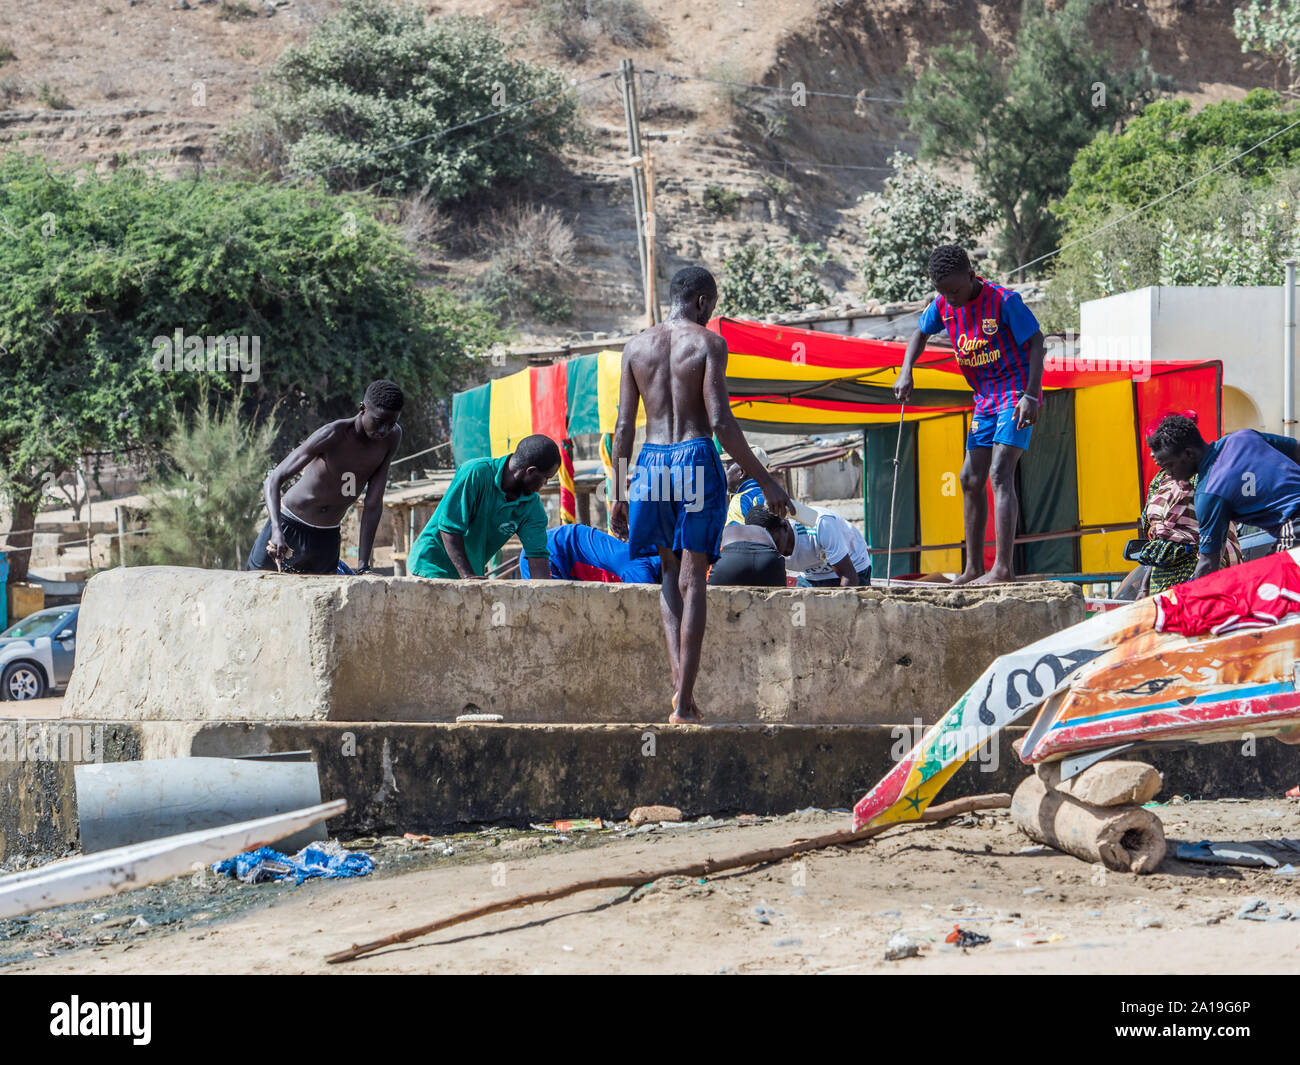 Dakar, Sénégal - le 2 février 2019 : garçons africains tirer de l'eau d'un puits dans le village de pêcheurs de Ouakam, près d'une haute falaise, à Dakar, Sénégal Banque D'Images